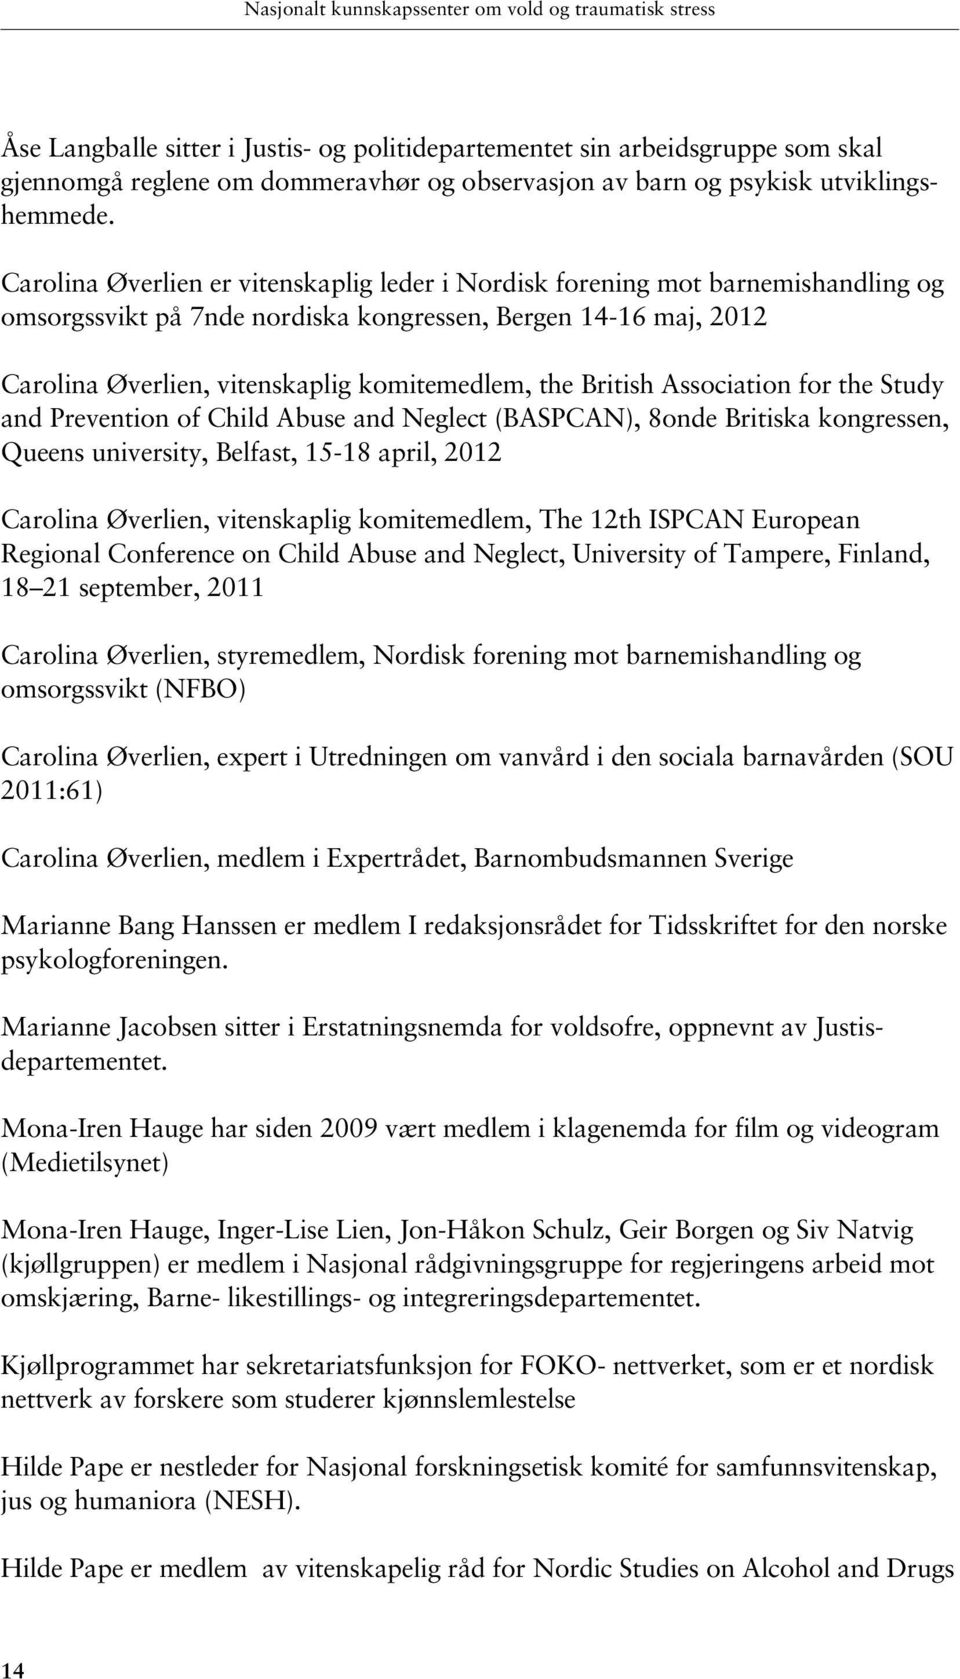 Carolina Øverlien er vitenskaplig leder i Nordisk forening mot barnemishandling og omsorgssvikt på 7nde nordiska kongressen, Bergen 14-16 maj, 2012 Carolina Øverlien, vitenskaplig komitemedlem, the